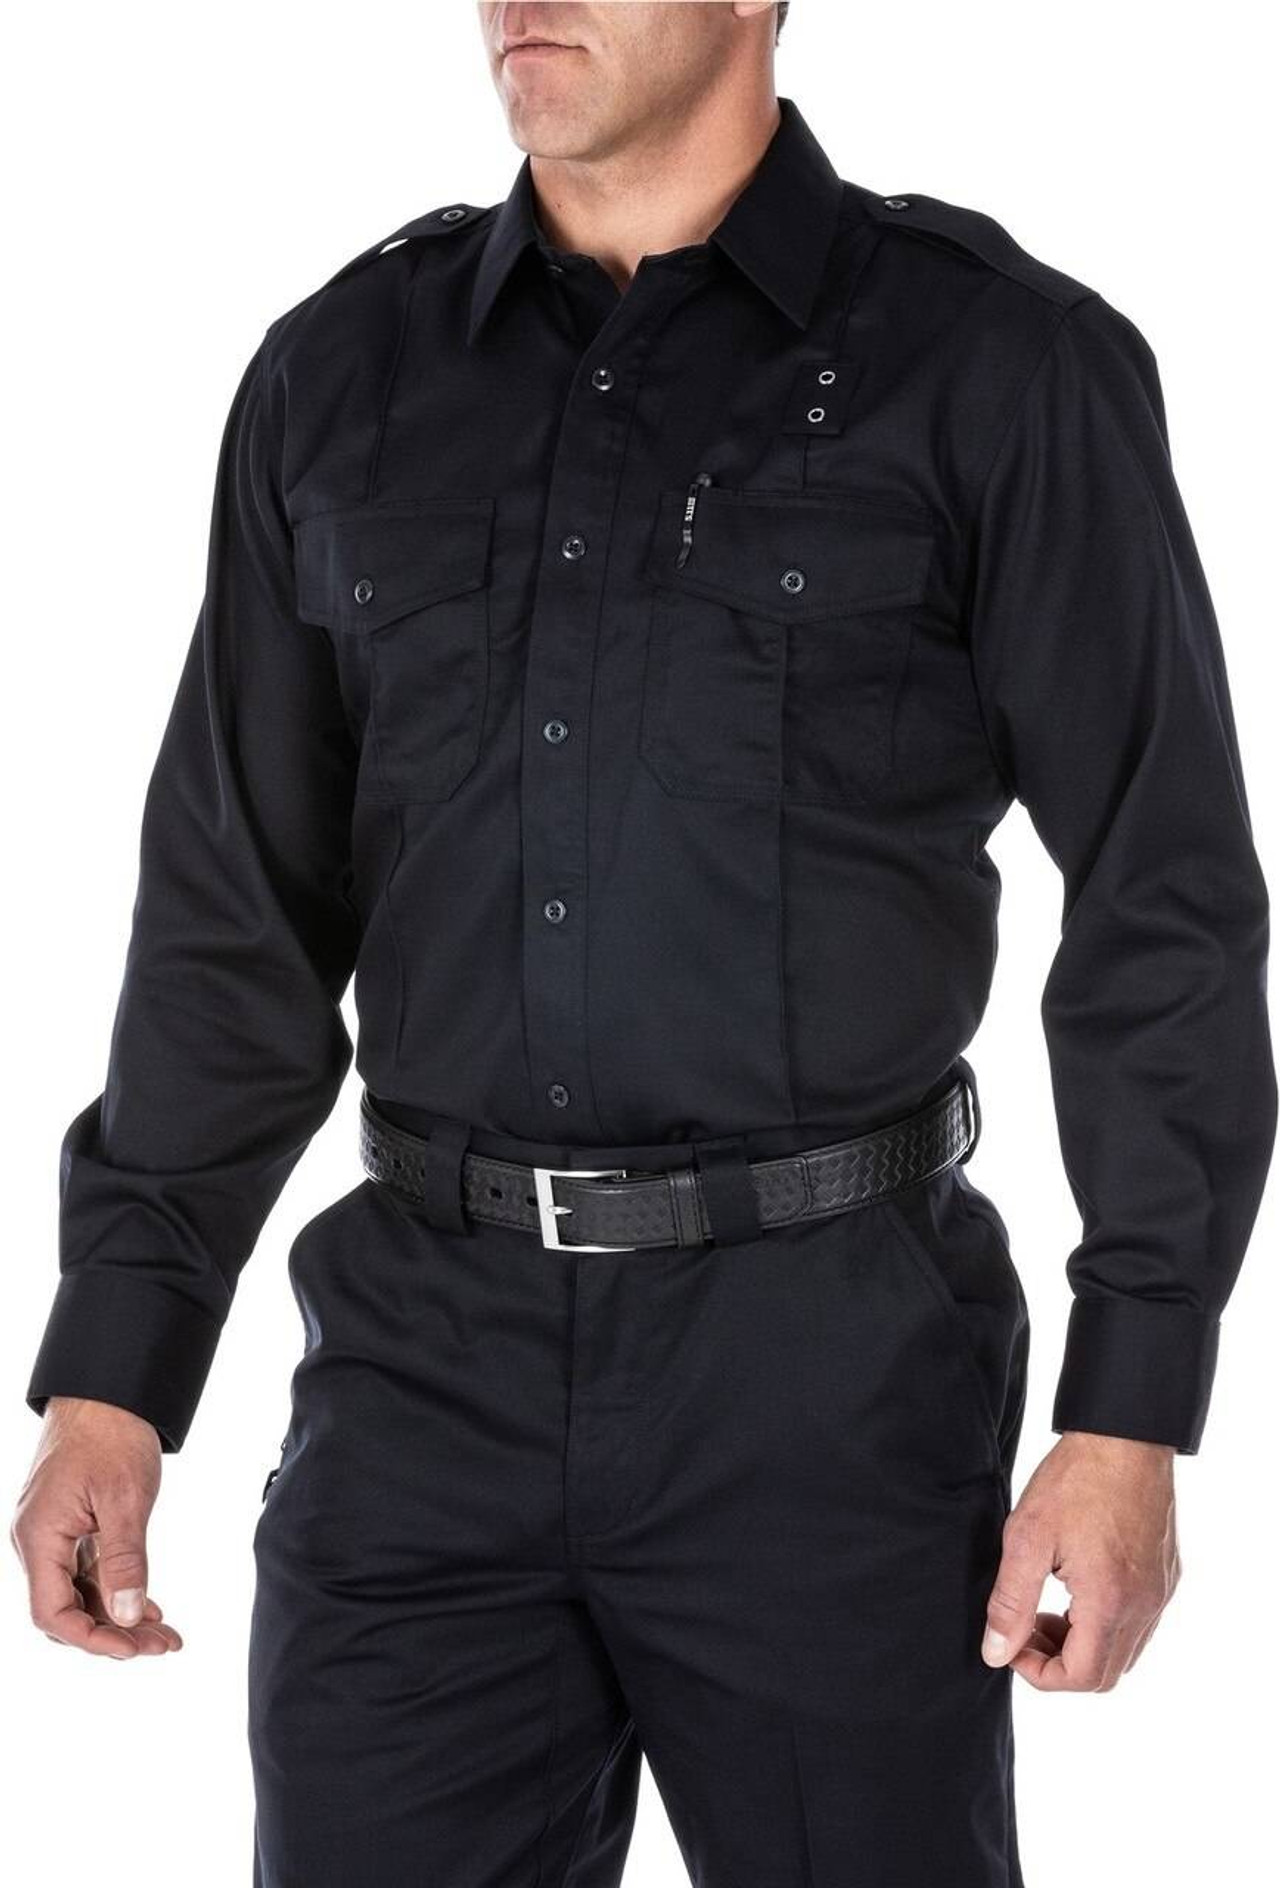 5.11 Tactical Men's Twill PDU Class A Long Sleeve Uniform Shirt 72344